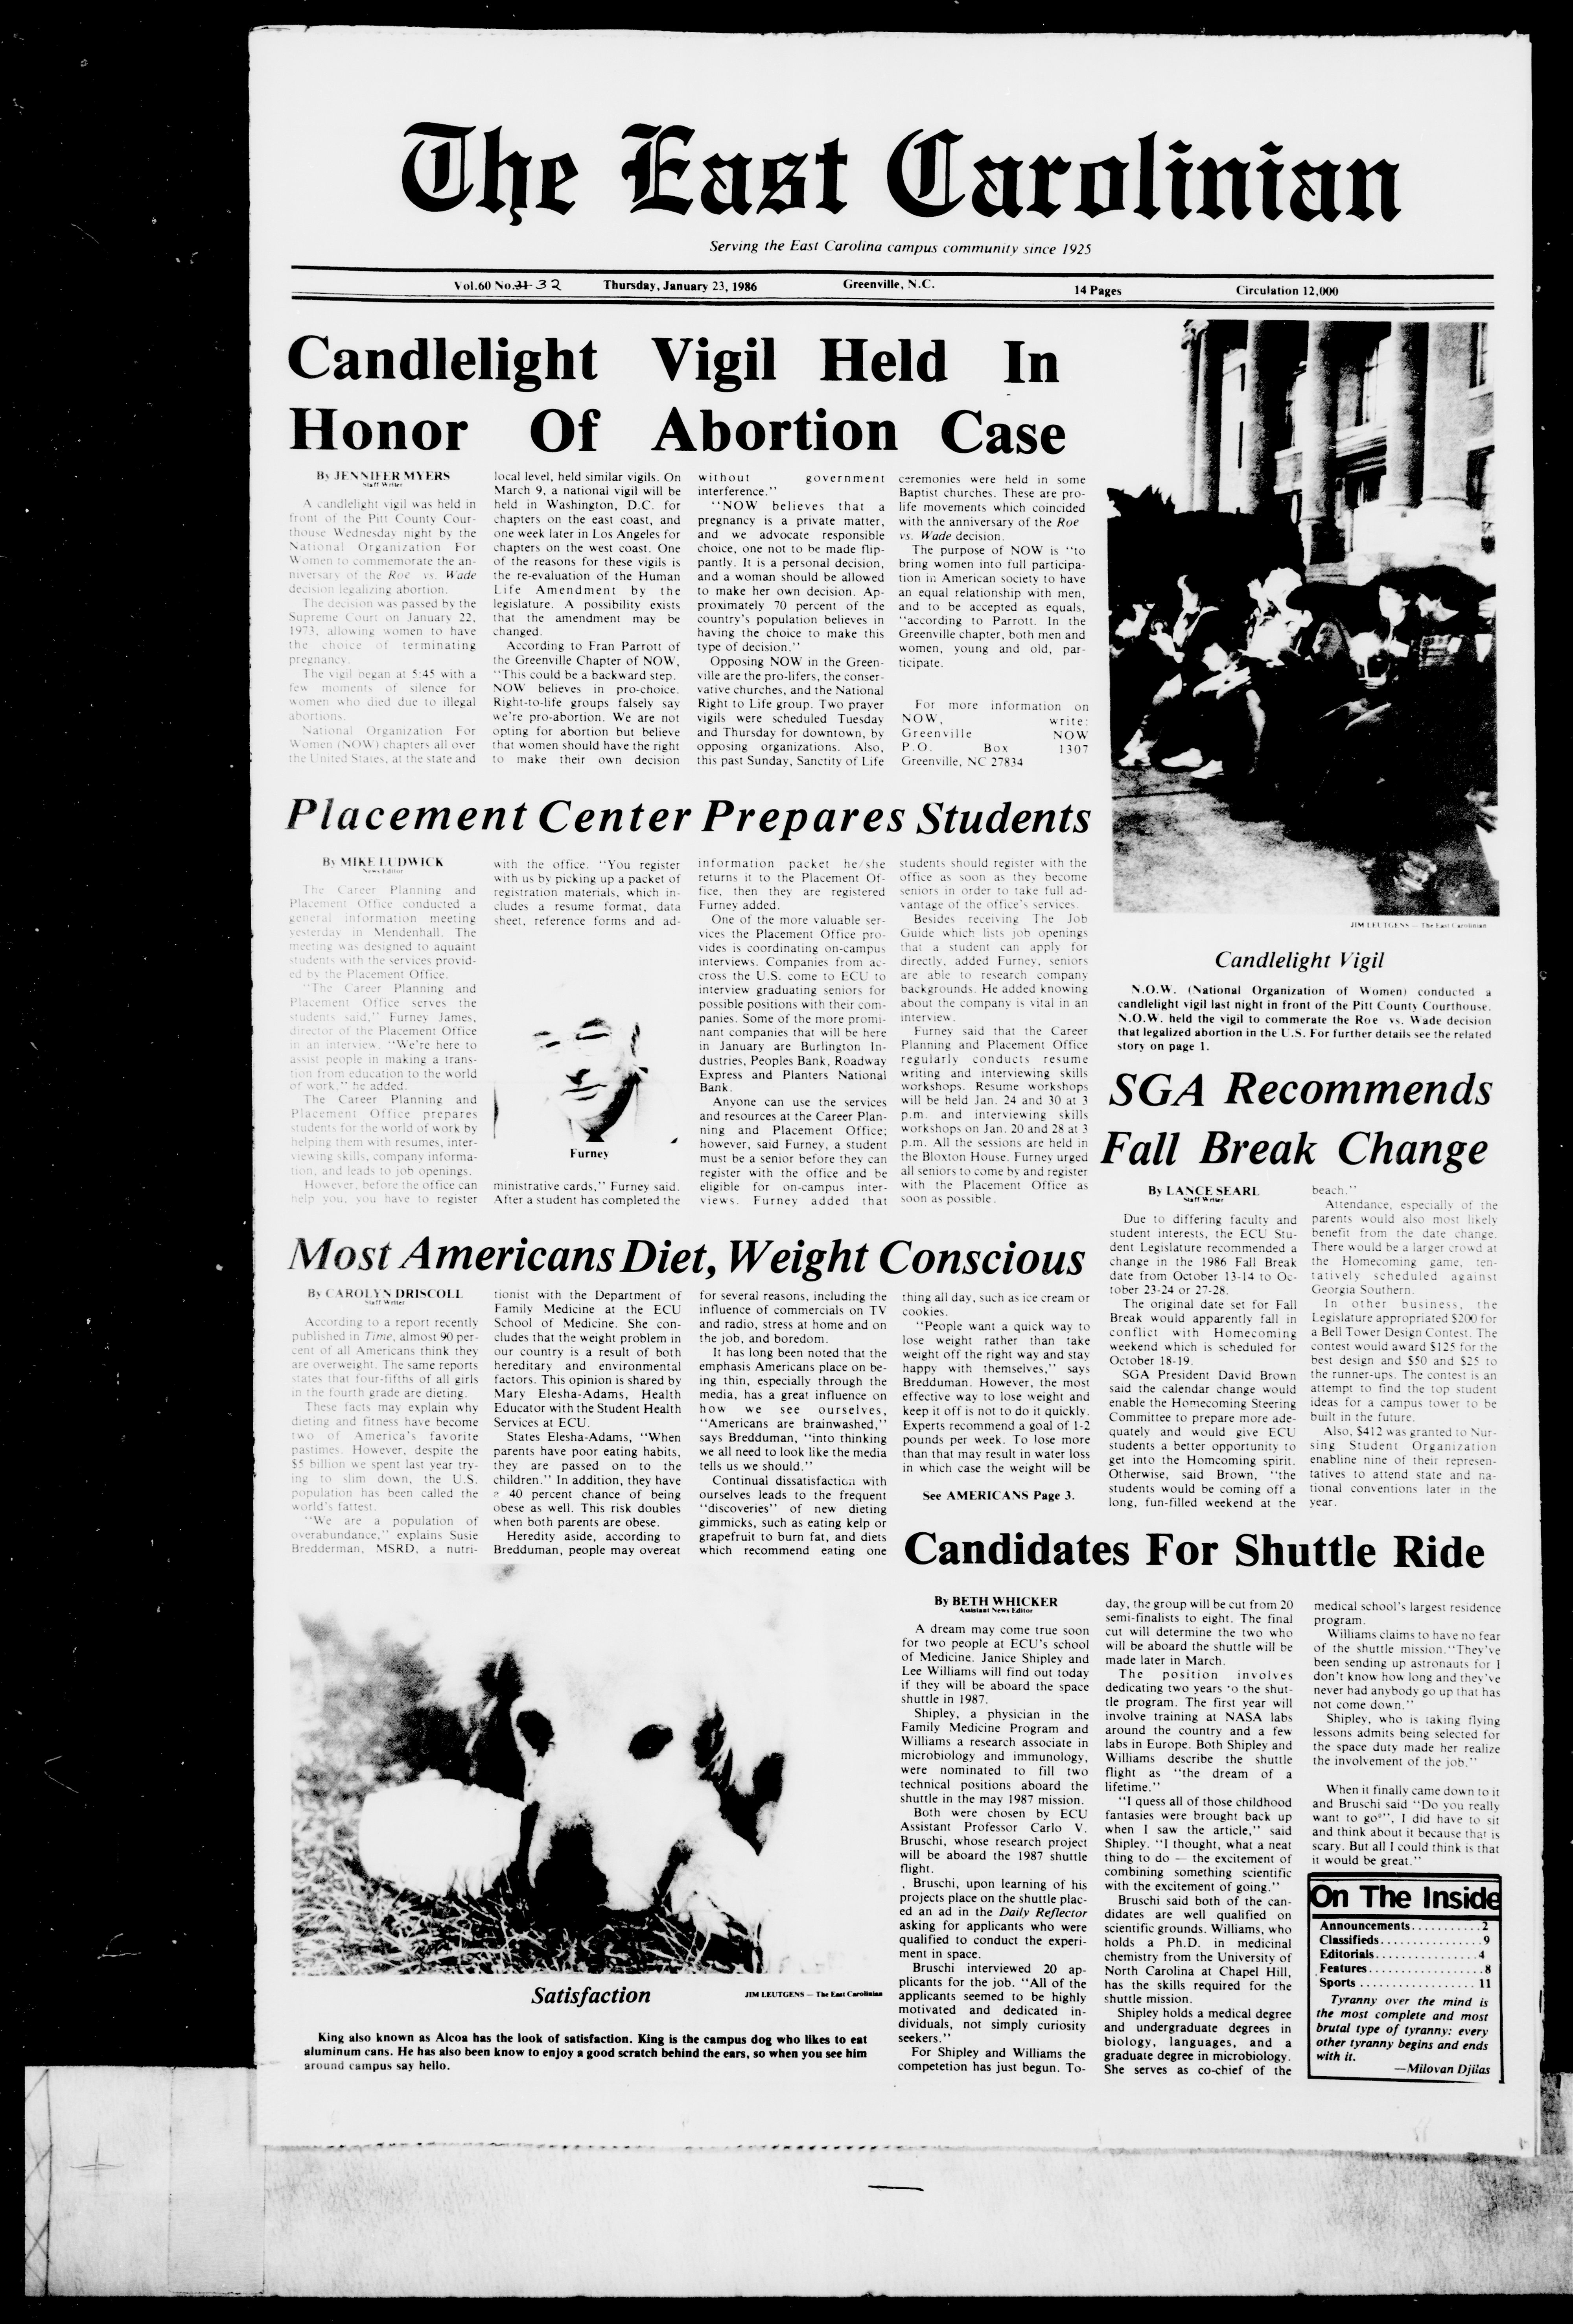 The East Carolinian, January 23, 1986